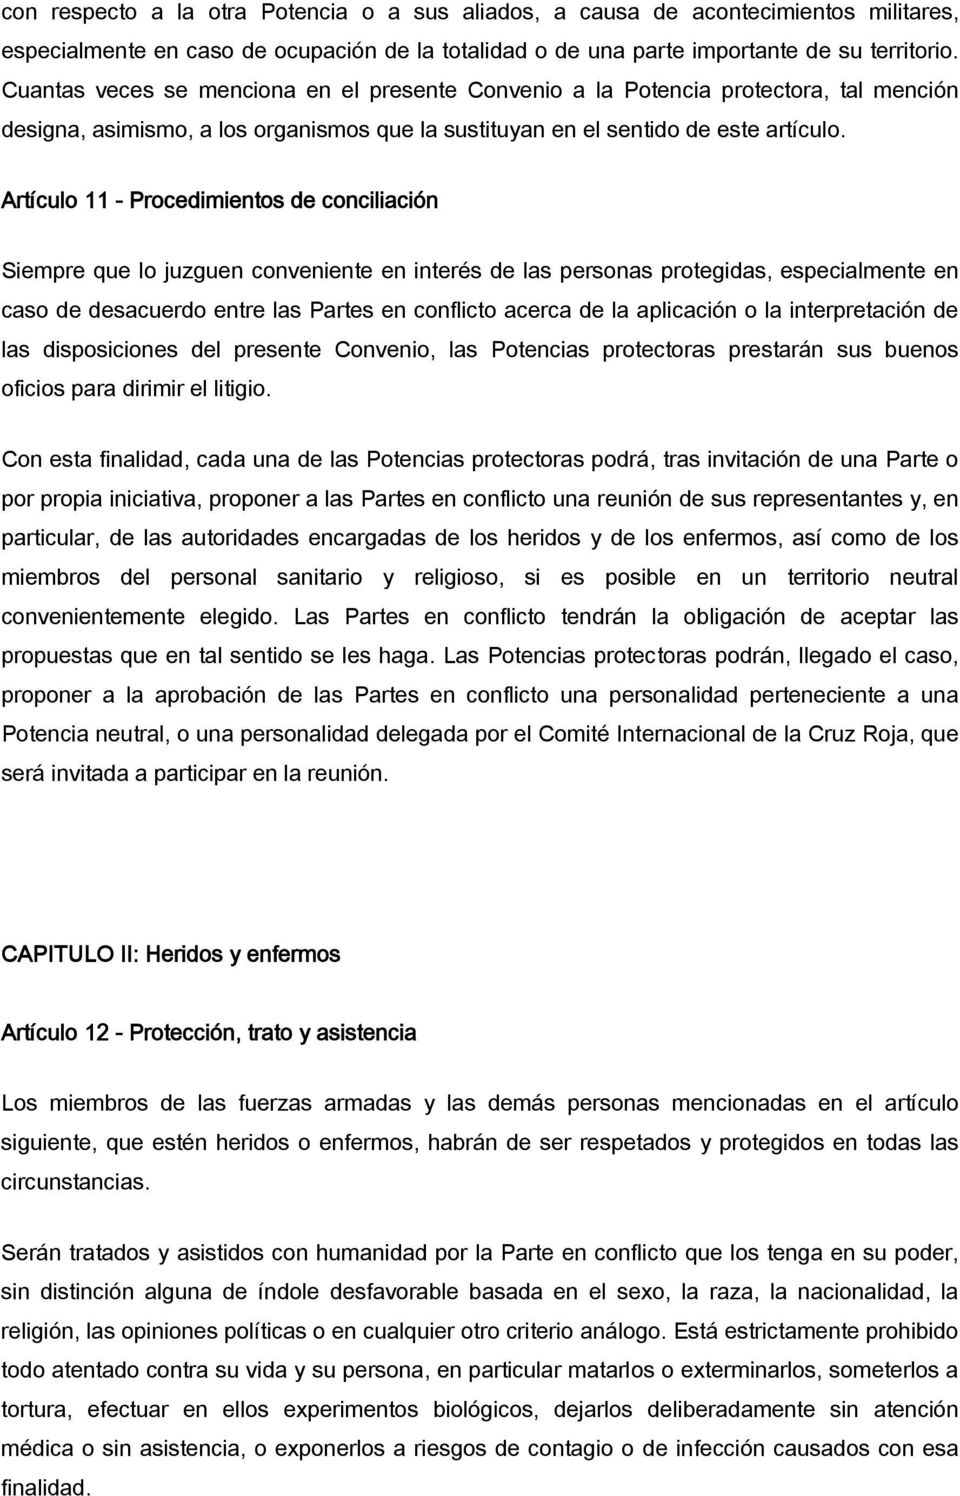 Artículo 11 - Procedimientos de conciliación Siempre que lo juzguen conveniente en interés de las personas protegidas, especialmente en caso de desacuerdo entre las Partes en conflicto acerca de la